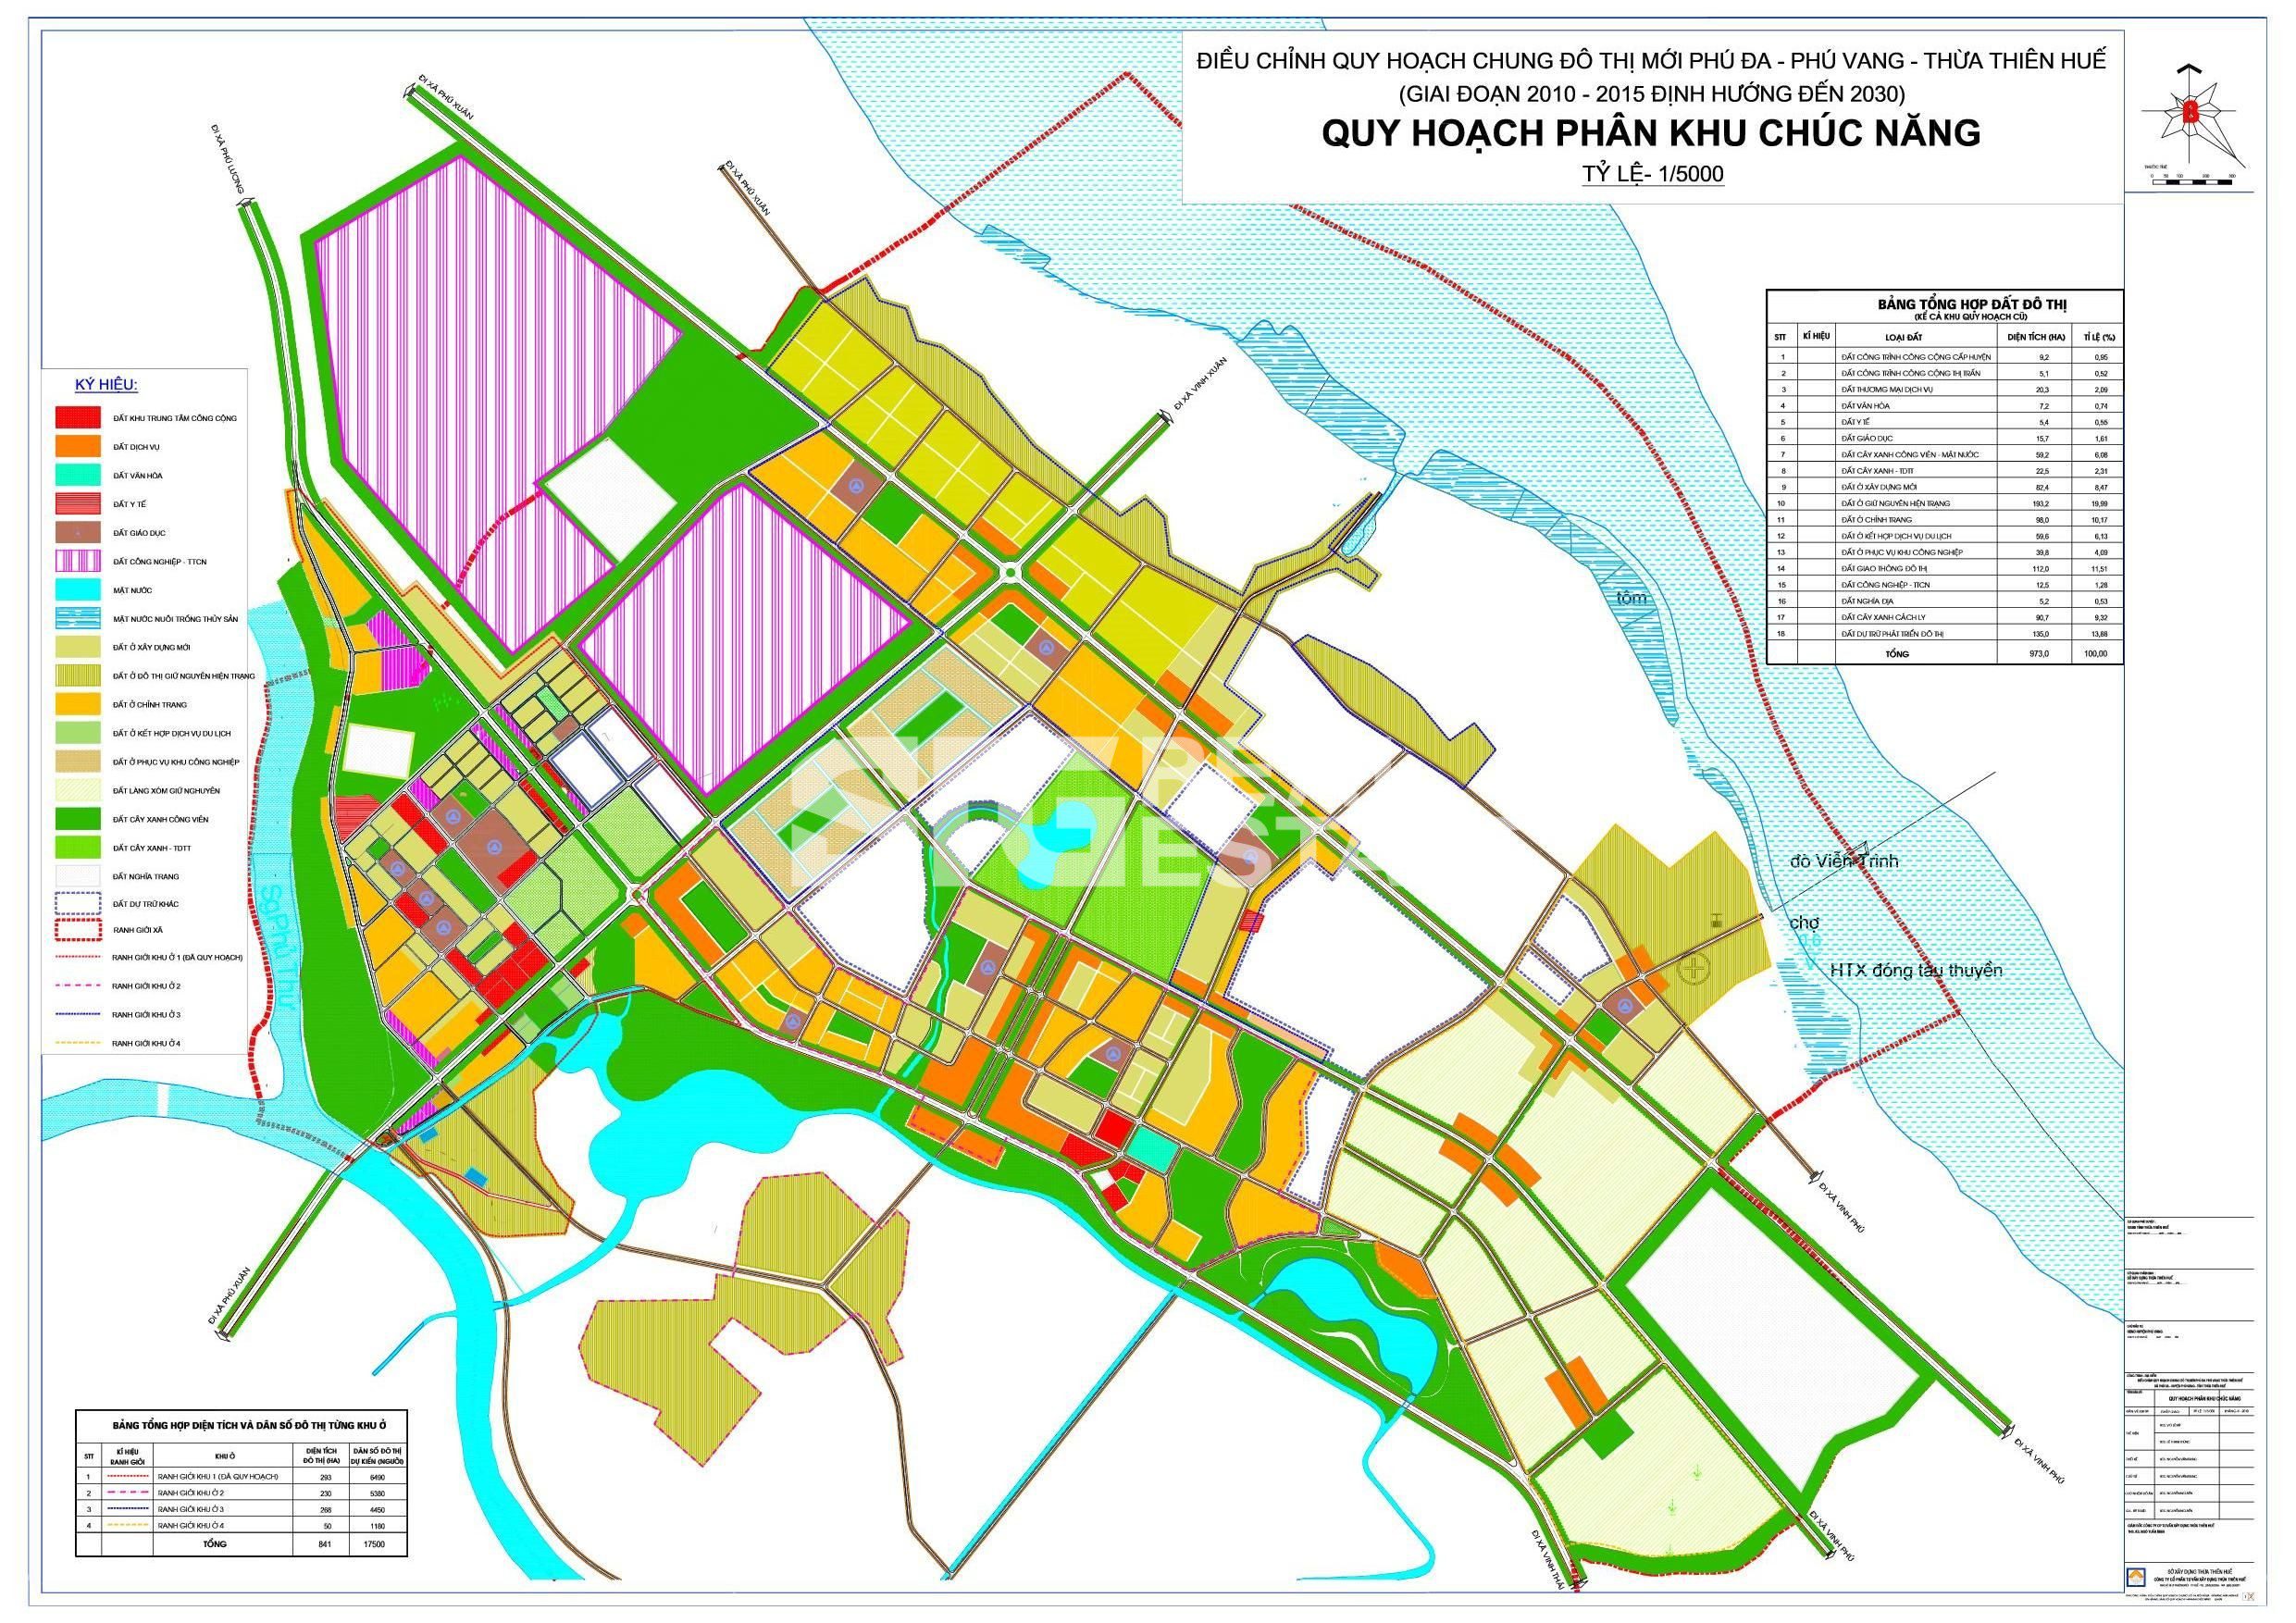 Bản đồ quy hoạch tỉnh Thừa Thiên Huế năm 2022 của STG Real Estate thể hiện tầm nhìn về một tỉnh thành phát triển, với hệ thống cơ sở hạ tầng hiện đại và nguồn nhân lực chất lượng cao, thu hút đầu tư và phát triển kinh tế.